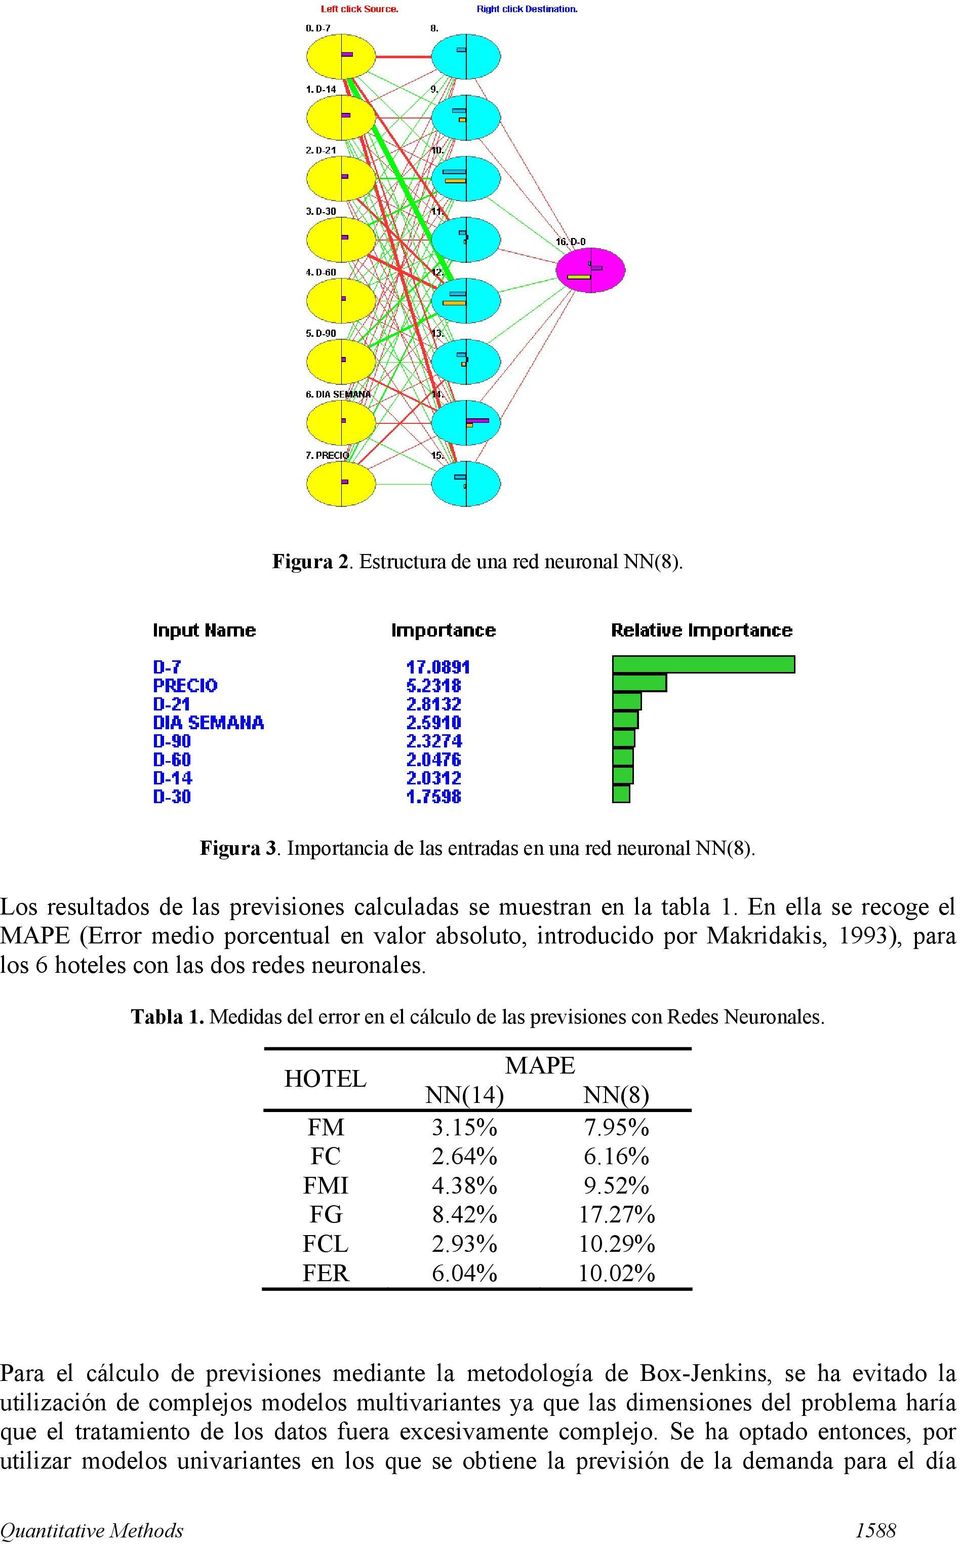 Medidas del error en el cálculo de las previsiones con Redes Neuronales. HOTEL MAPE NN(14) NN(8) FM 3.15% 7.95% FC 2.64% 6.16% FMI 4.38% 9.52% FG 8.42% 17.27% FCL 2.93% 10.29% FER 6.04% 10.